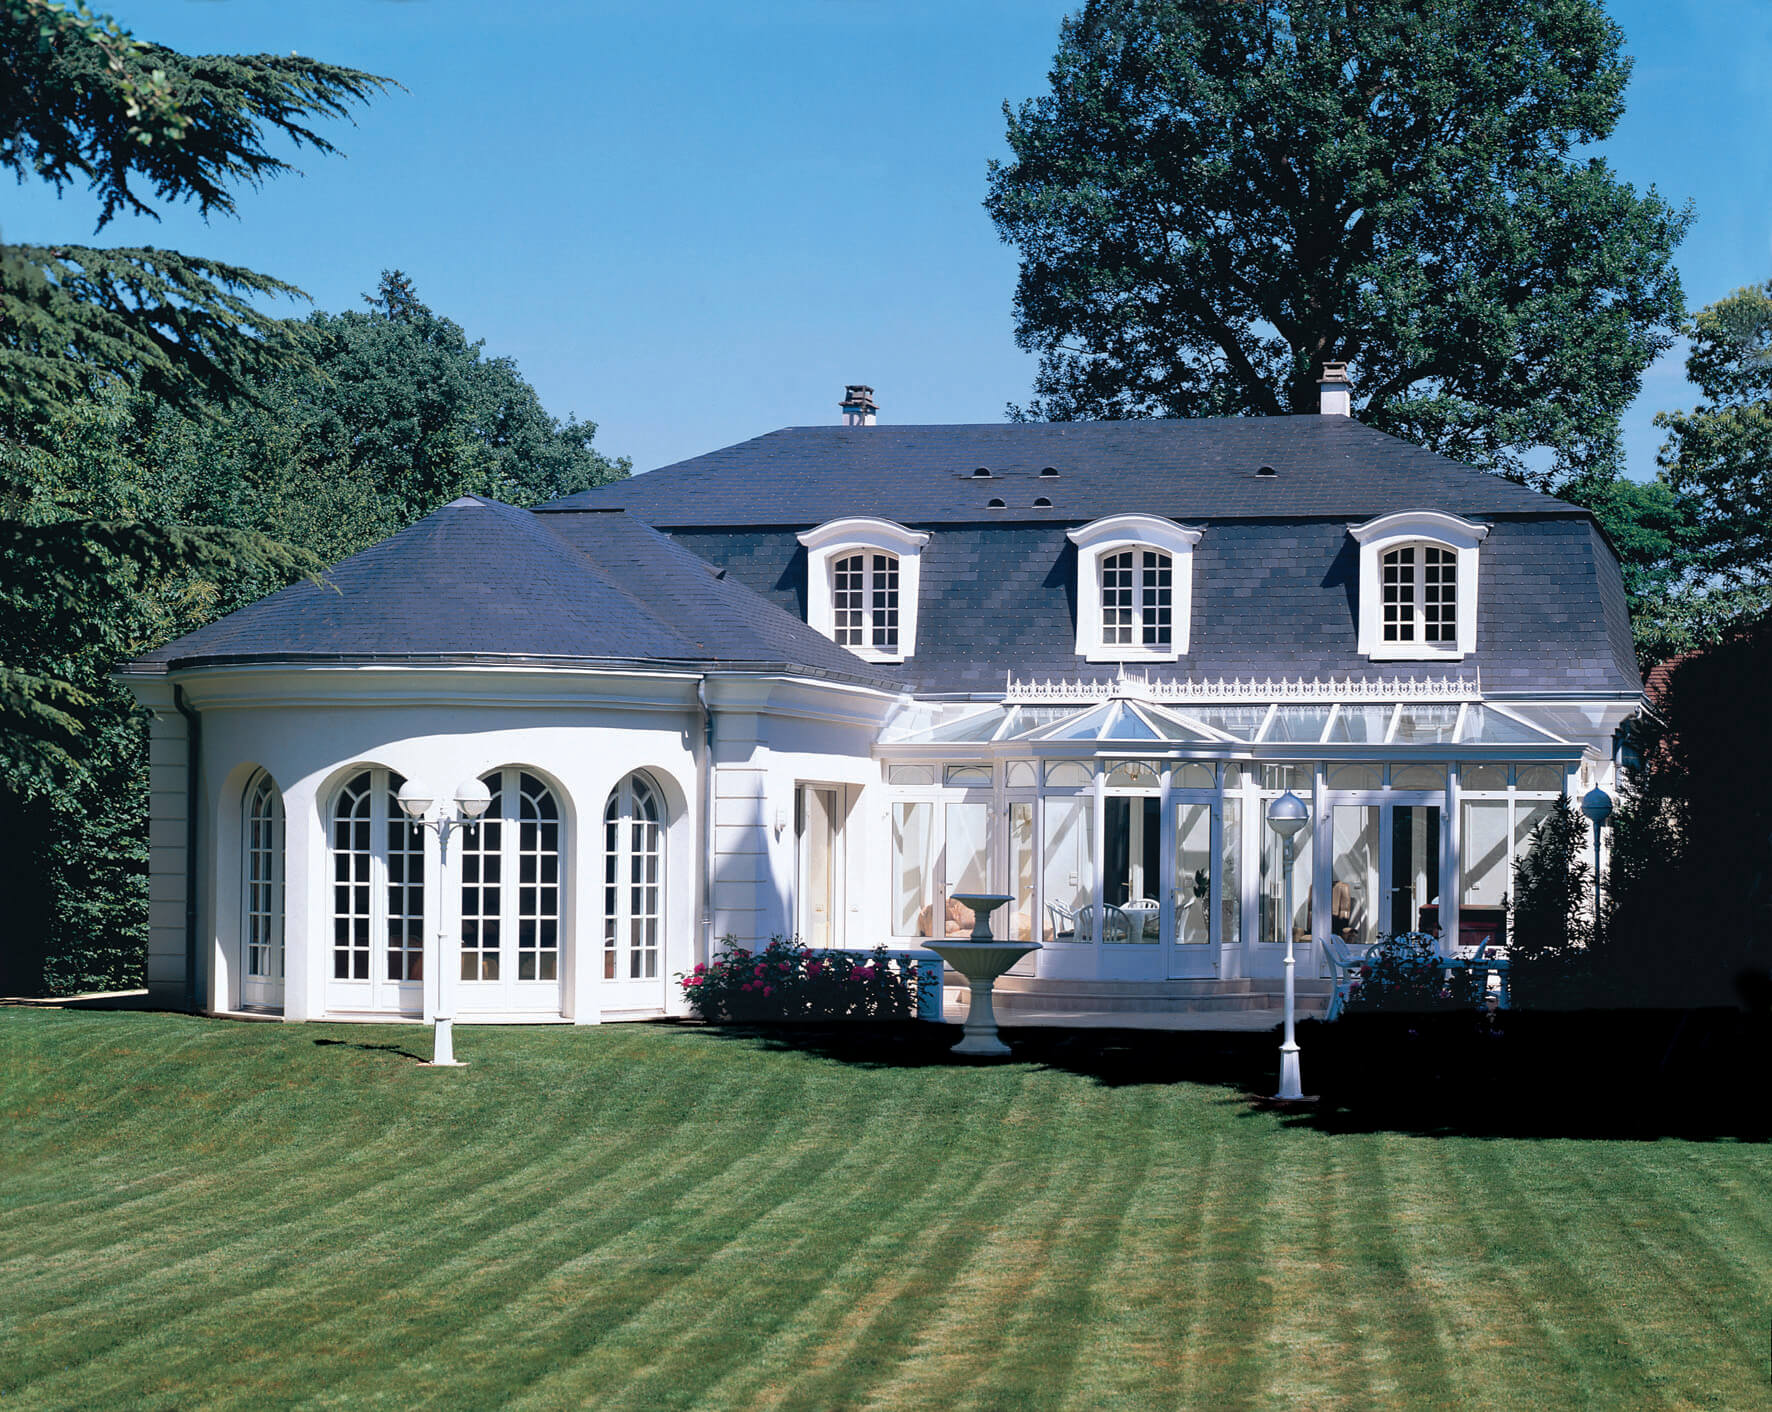 Maison vintage en pierre blanche avec toi bleu sombre, avec veranda et jardin